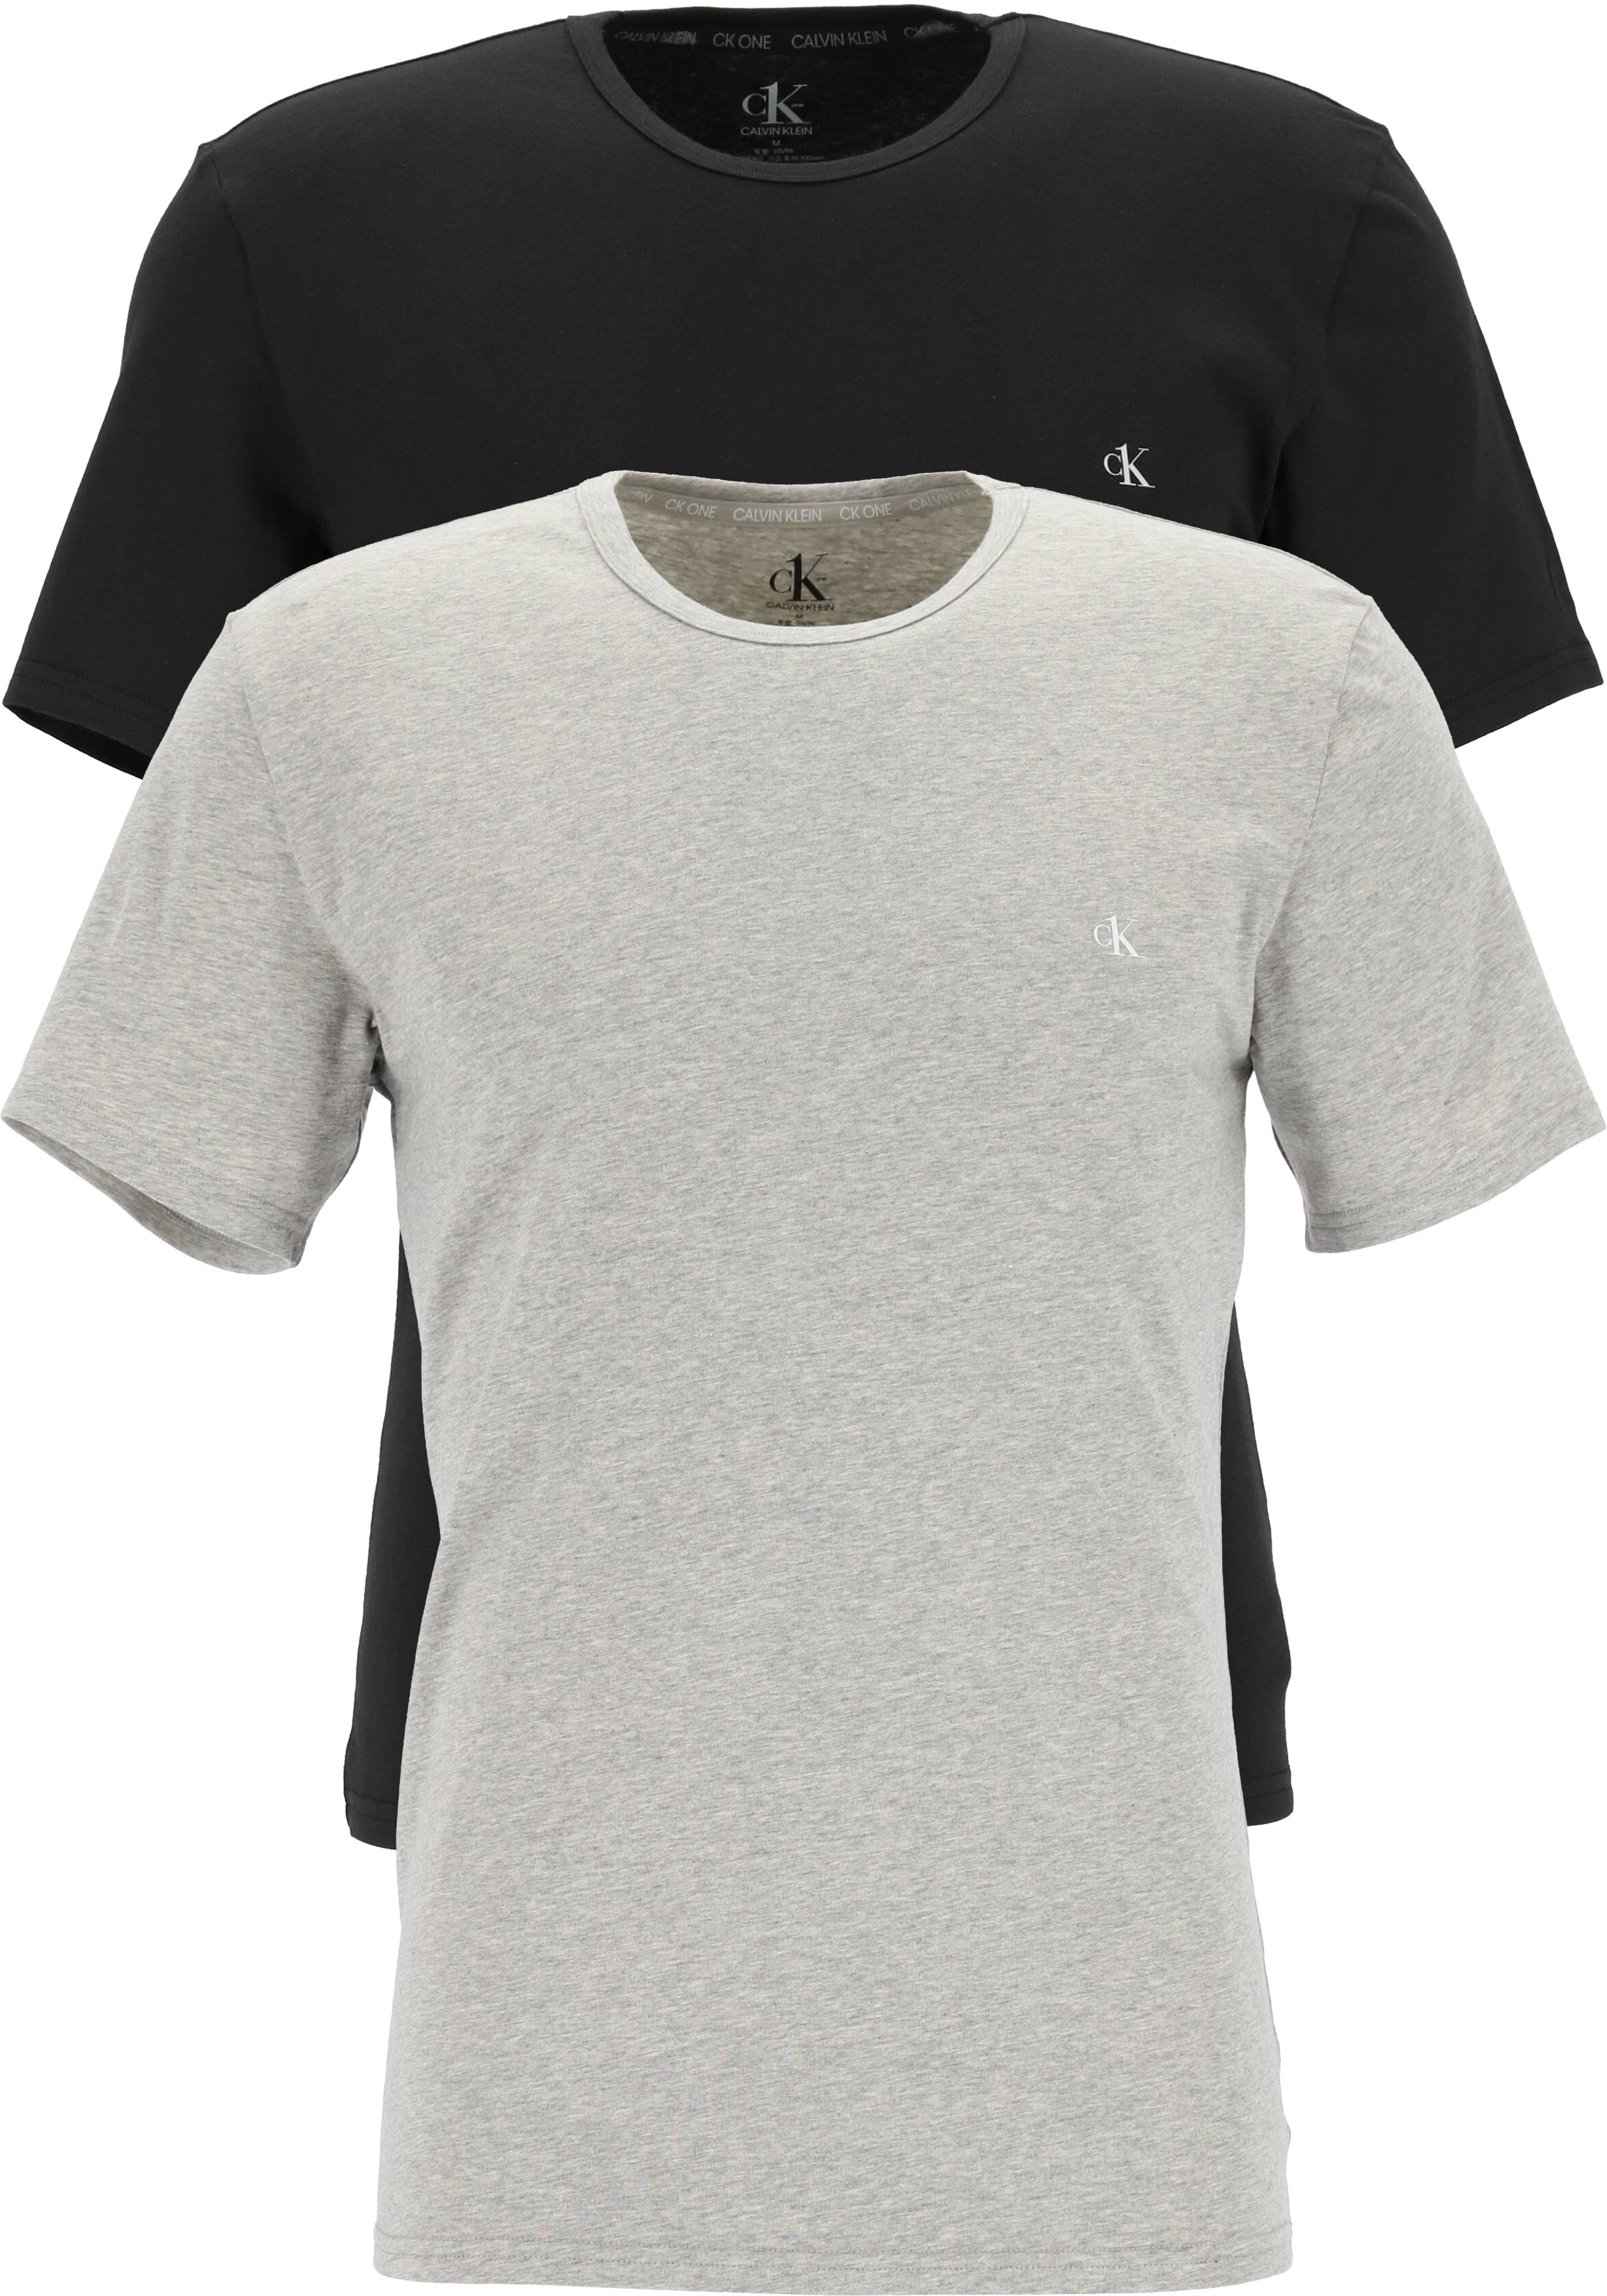 vervolgens schouder Eindeloos Calvin Klein CK ONE cotton crew neck T-shirts (2-pack), heren T-shirts... -  Zomer SALE tot 50% korting